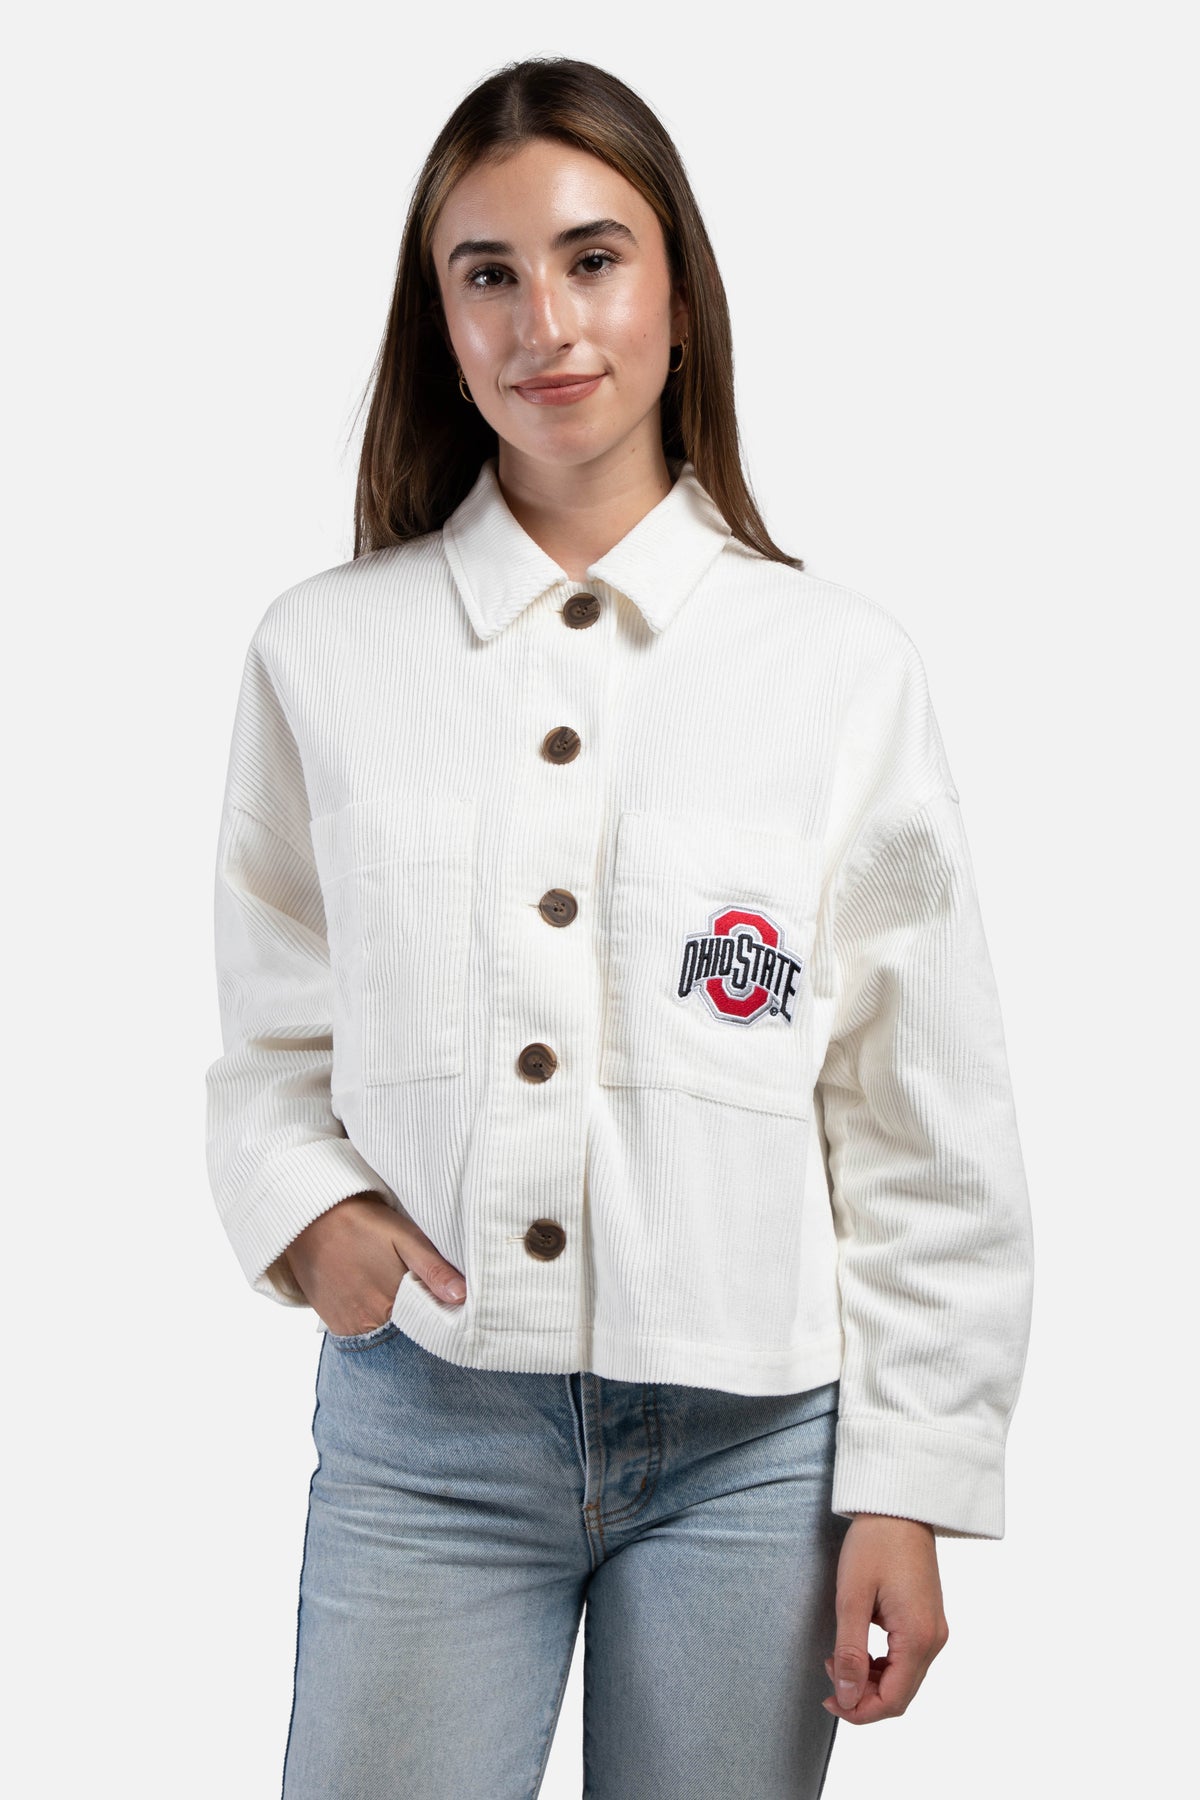 Ohio State University Corded Jacket